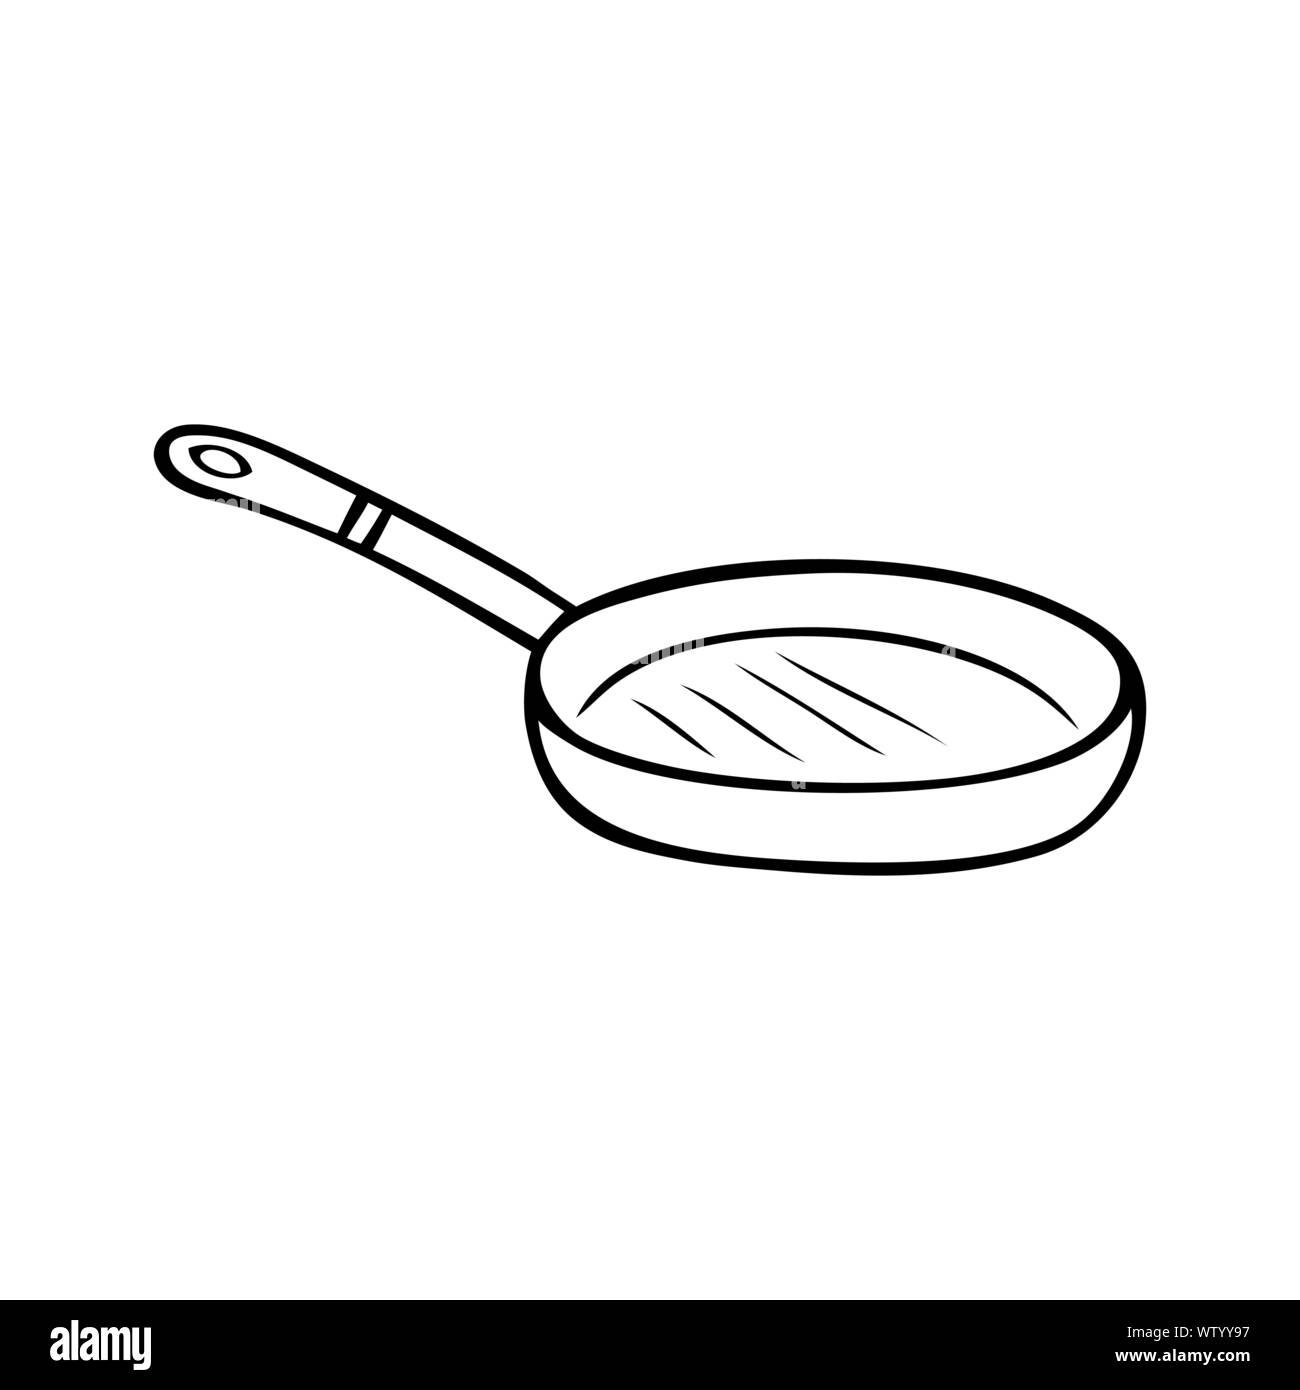 Как нарисовать сковородку